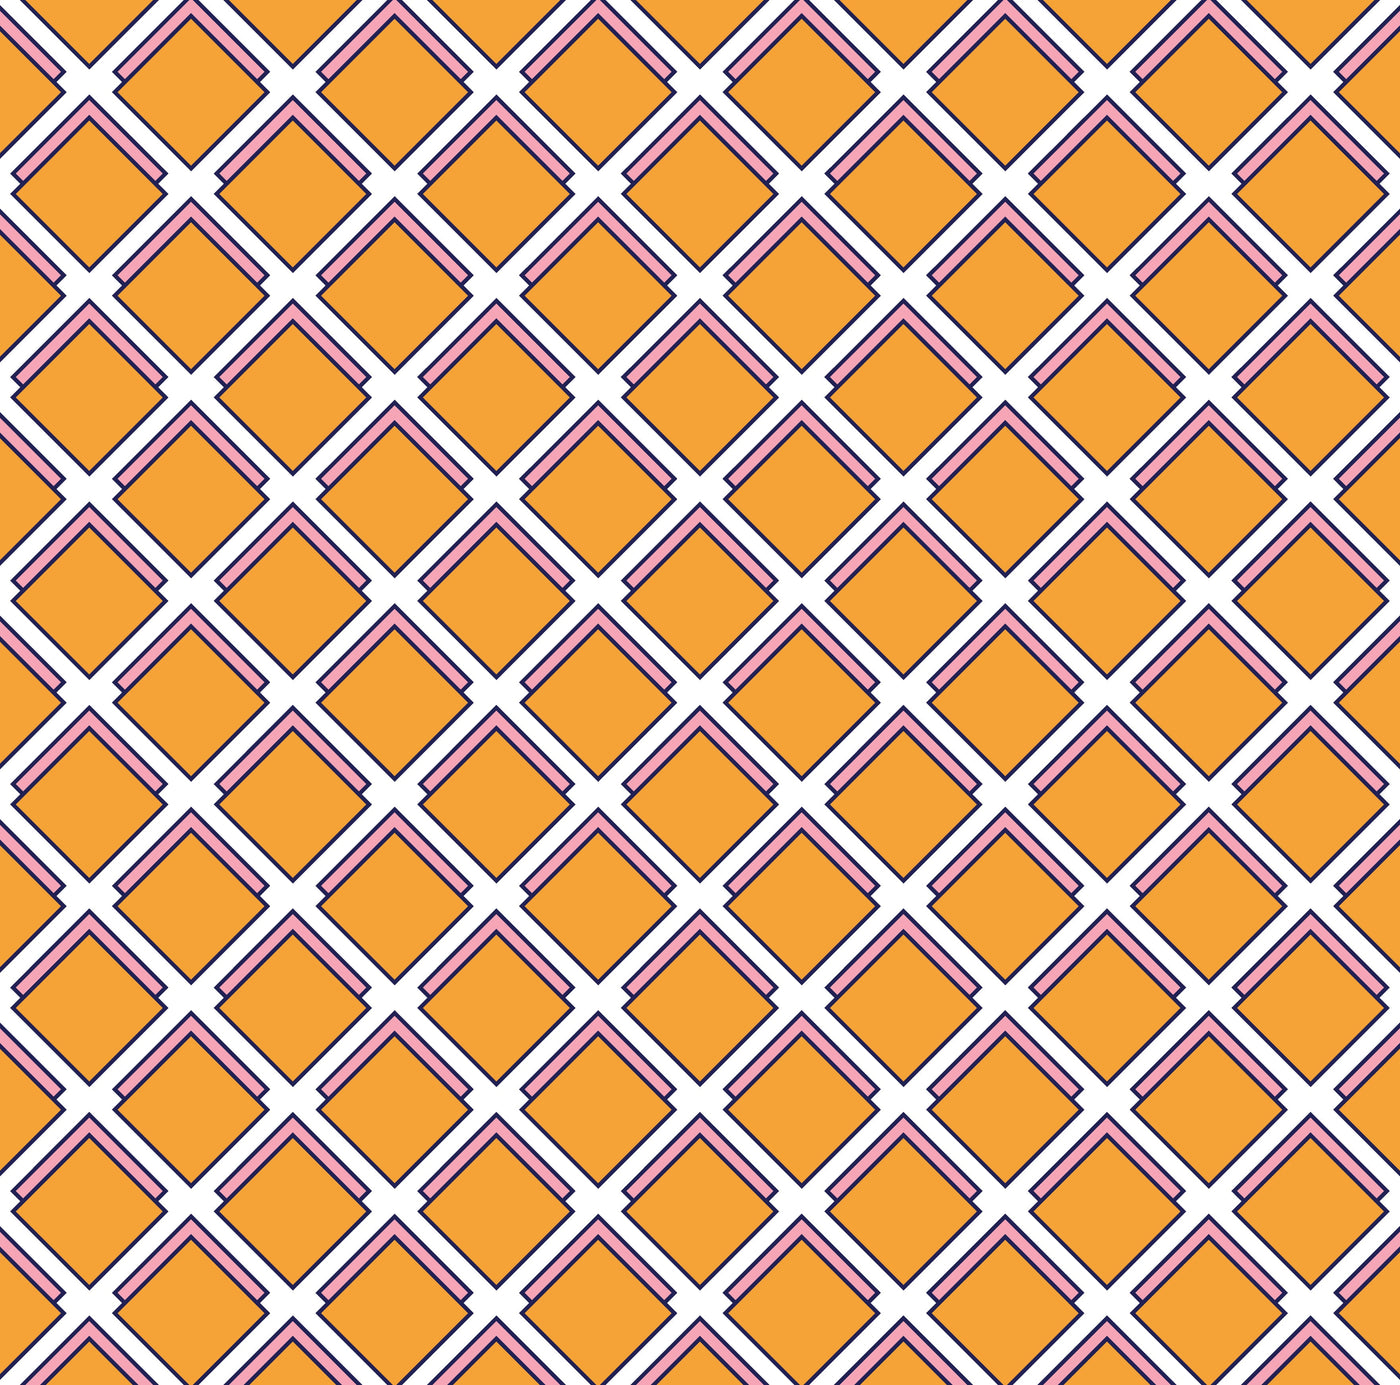 Wallpaper Double Roll / Orange Parker Wallpaper Katie Kime